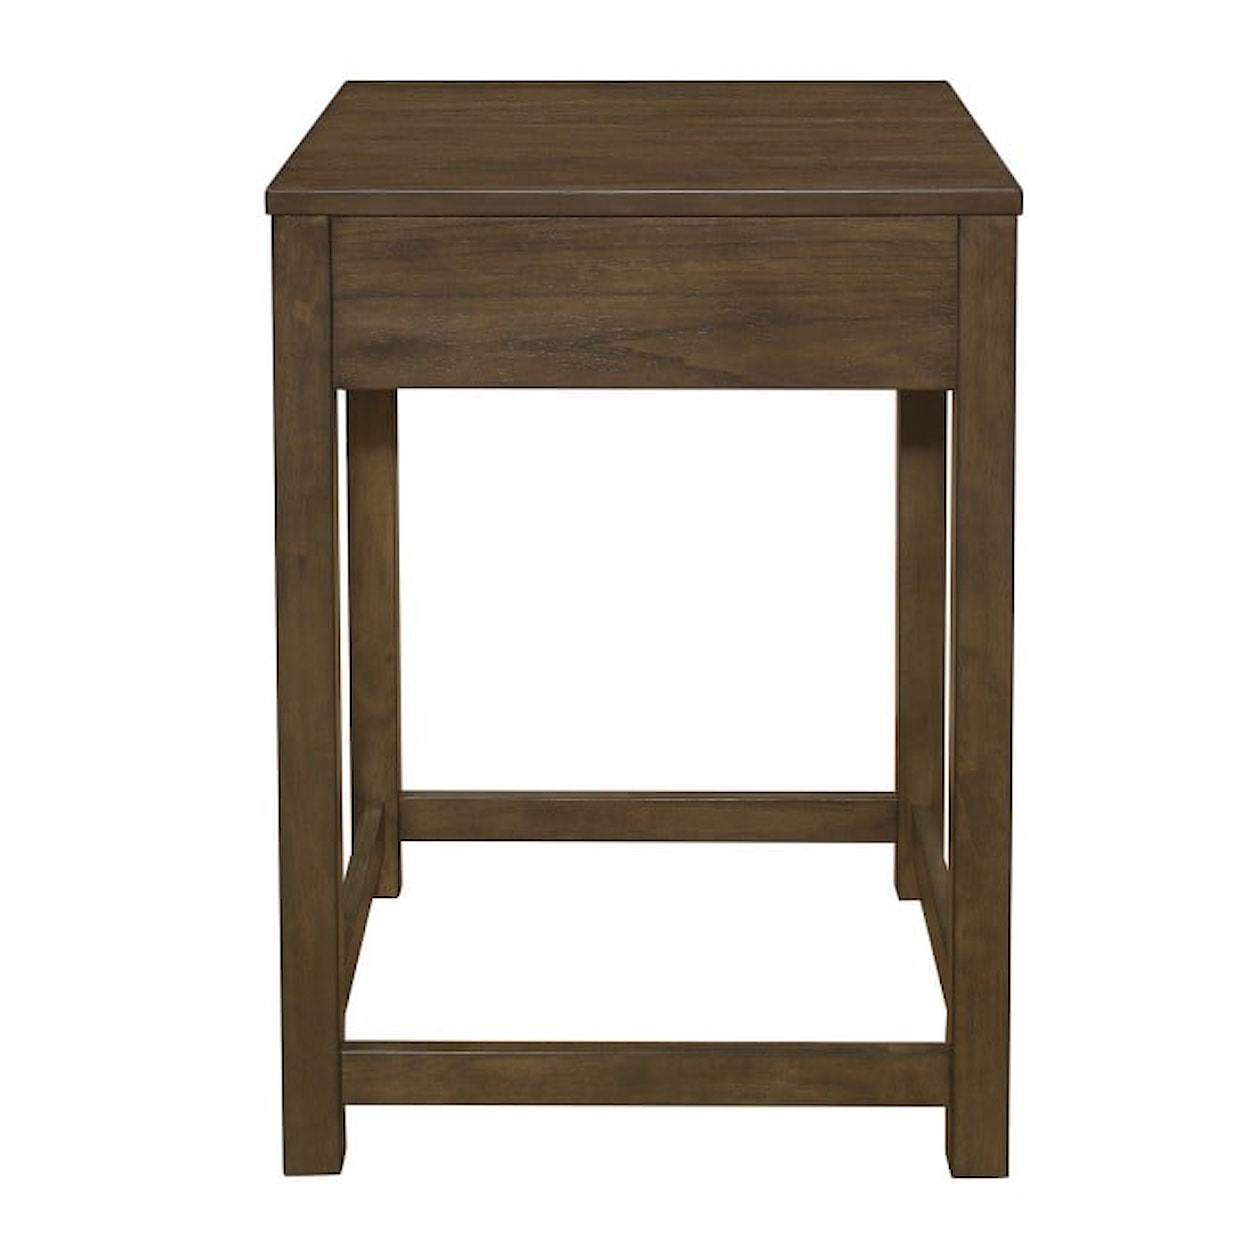 Homelegance Furniture Blanche Corner Table